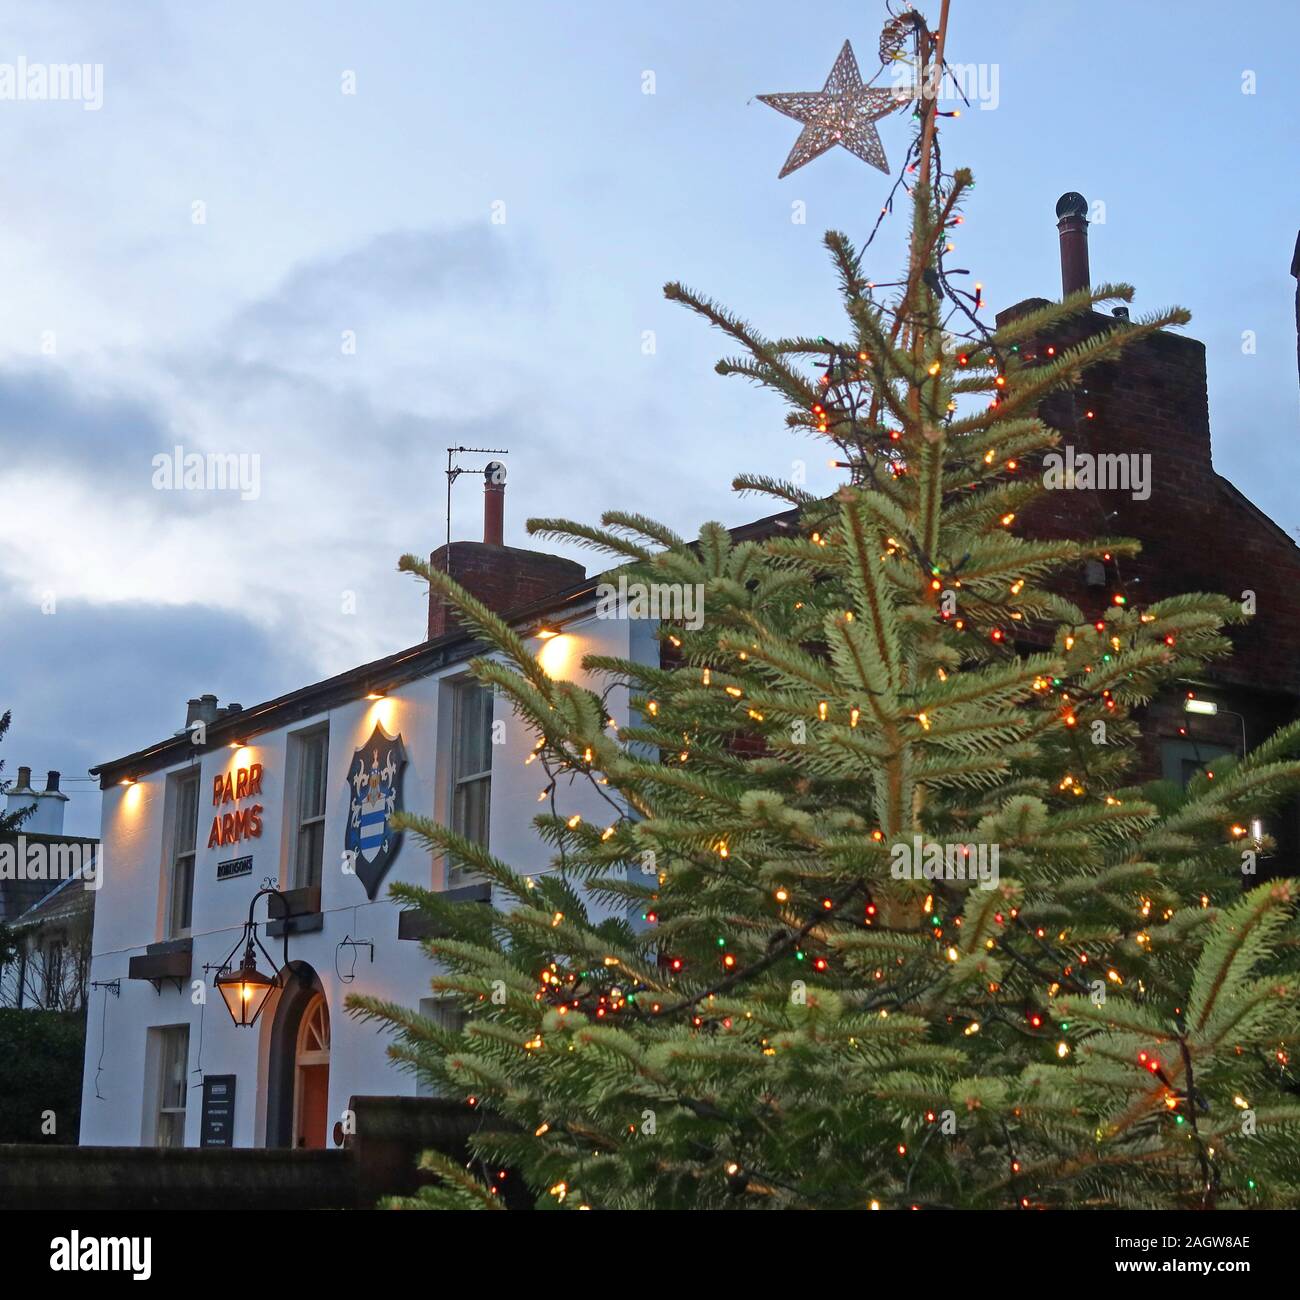 Bracci di Parr Inn e albero di Natale decorato, St Wilfrids, Chiesa Lane, Grappenhall, Warrington, Cheshire, Inghilterra al crepuscolo Foto Stock